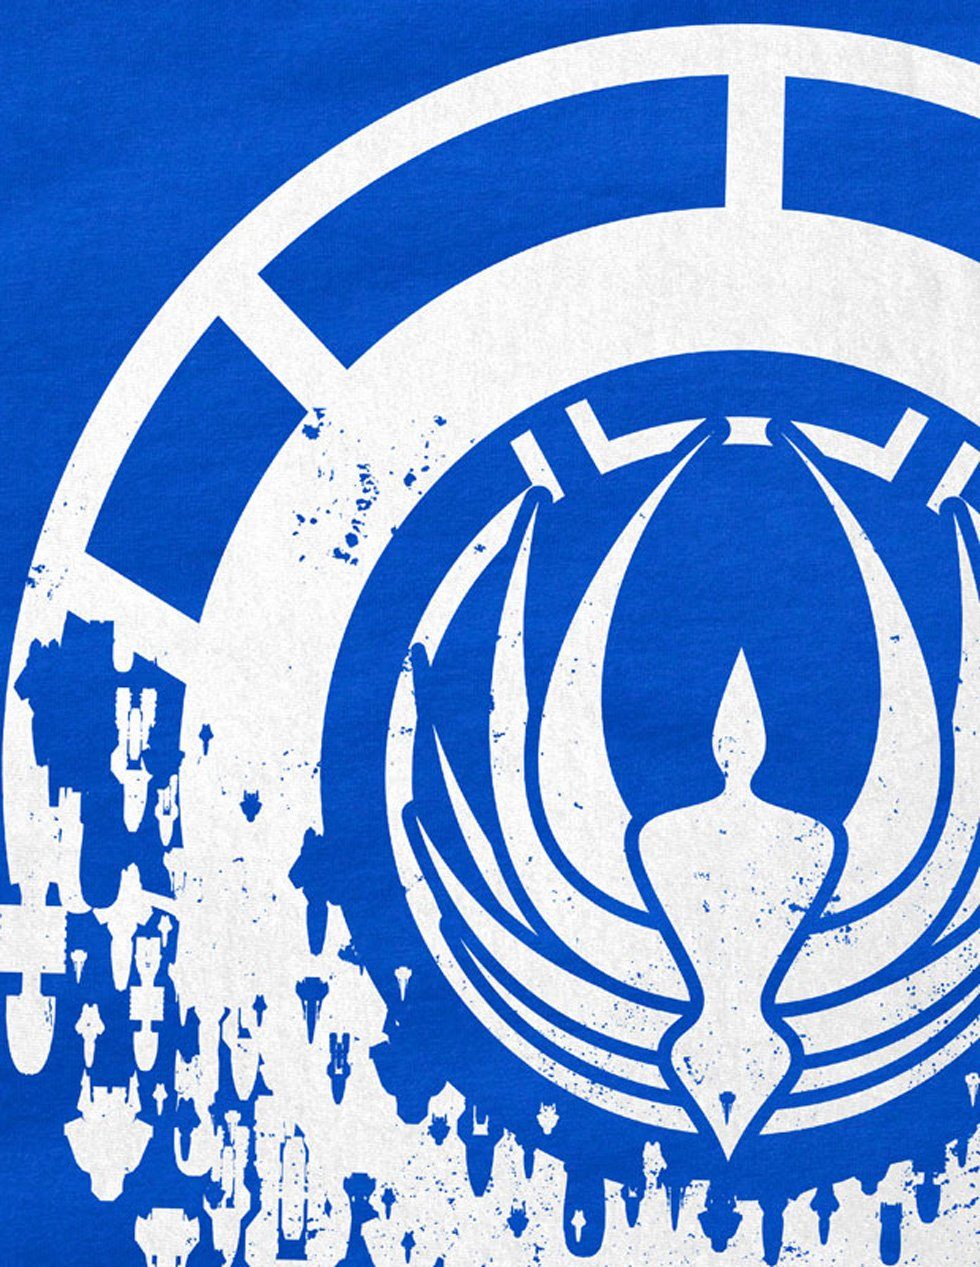 style3 Print-Shirt Herren T-Shirt Battlestar galactica blau raumschiff Übermacht